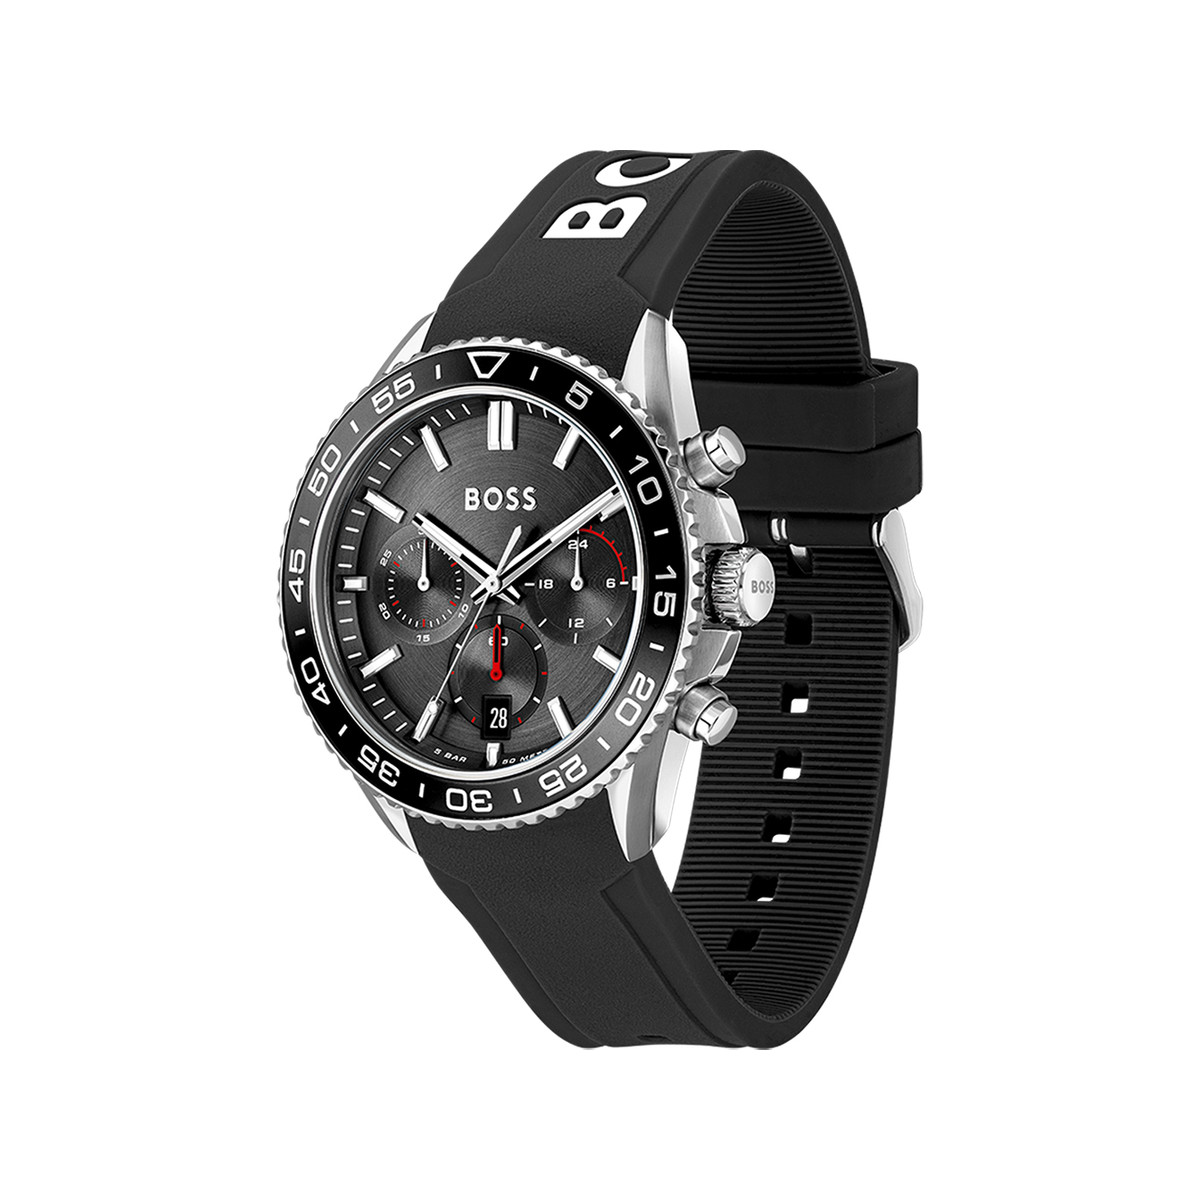 Montre BOSS sport lux homme chronographe bracelet silicone noir - vue 2